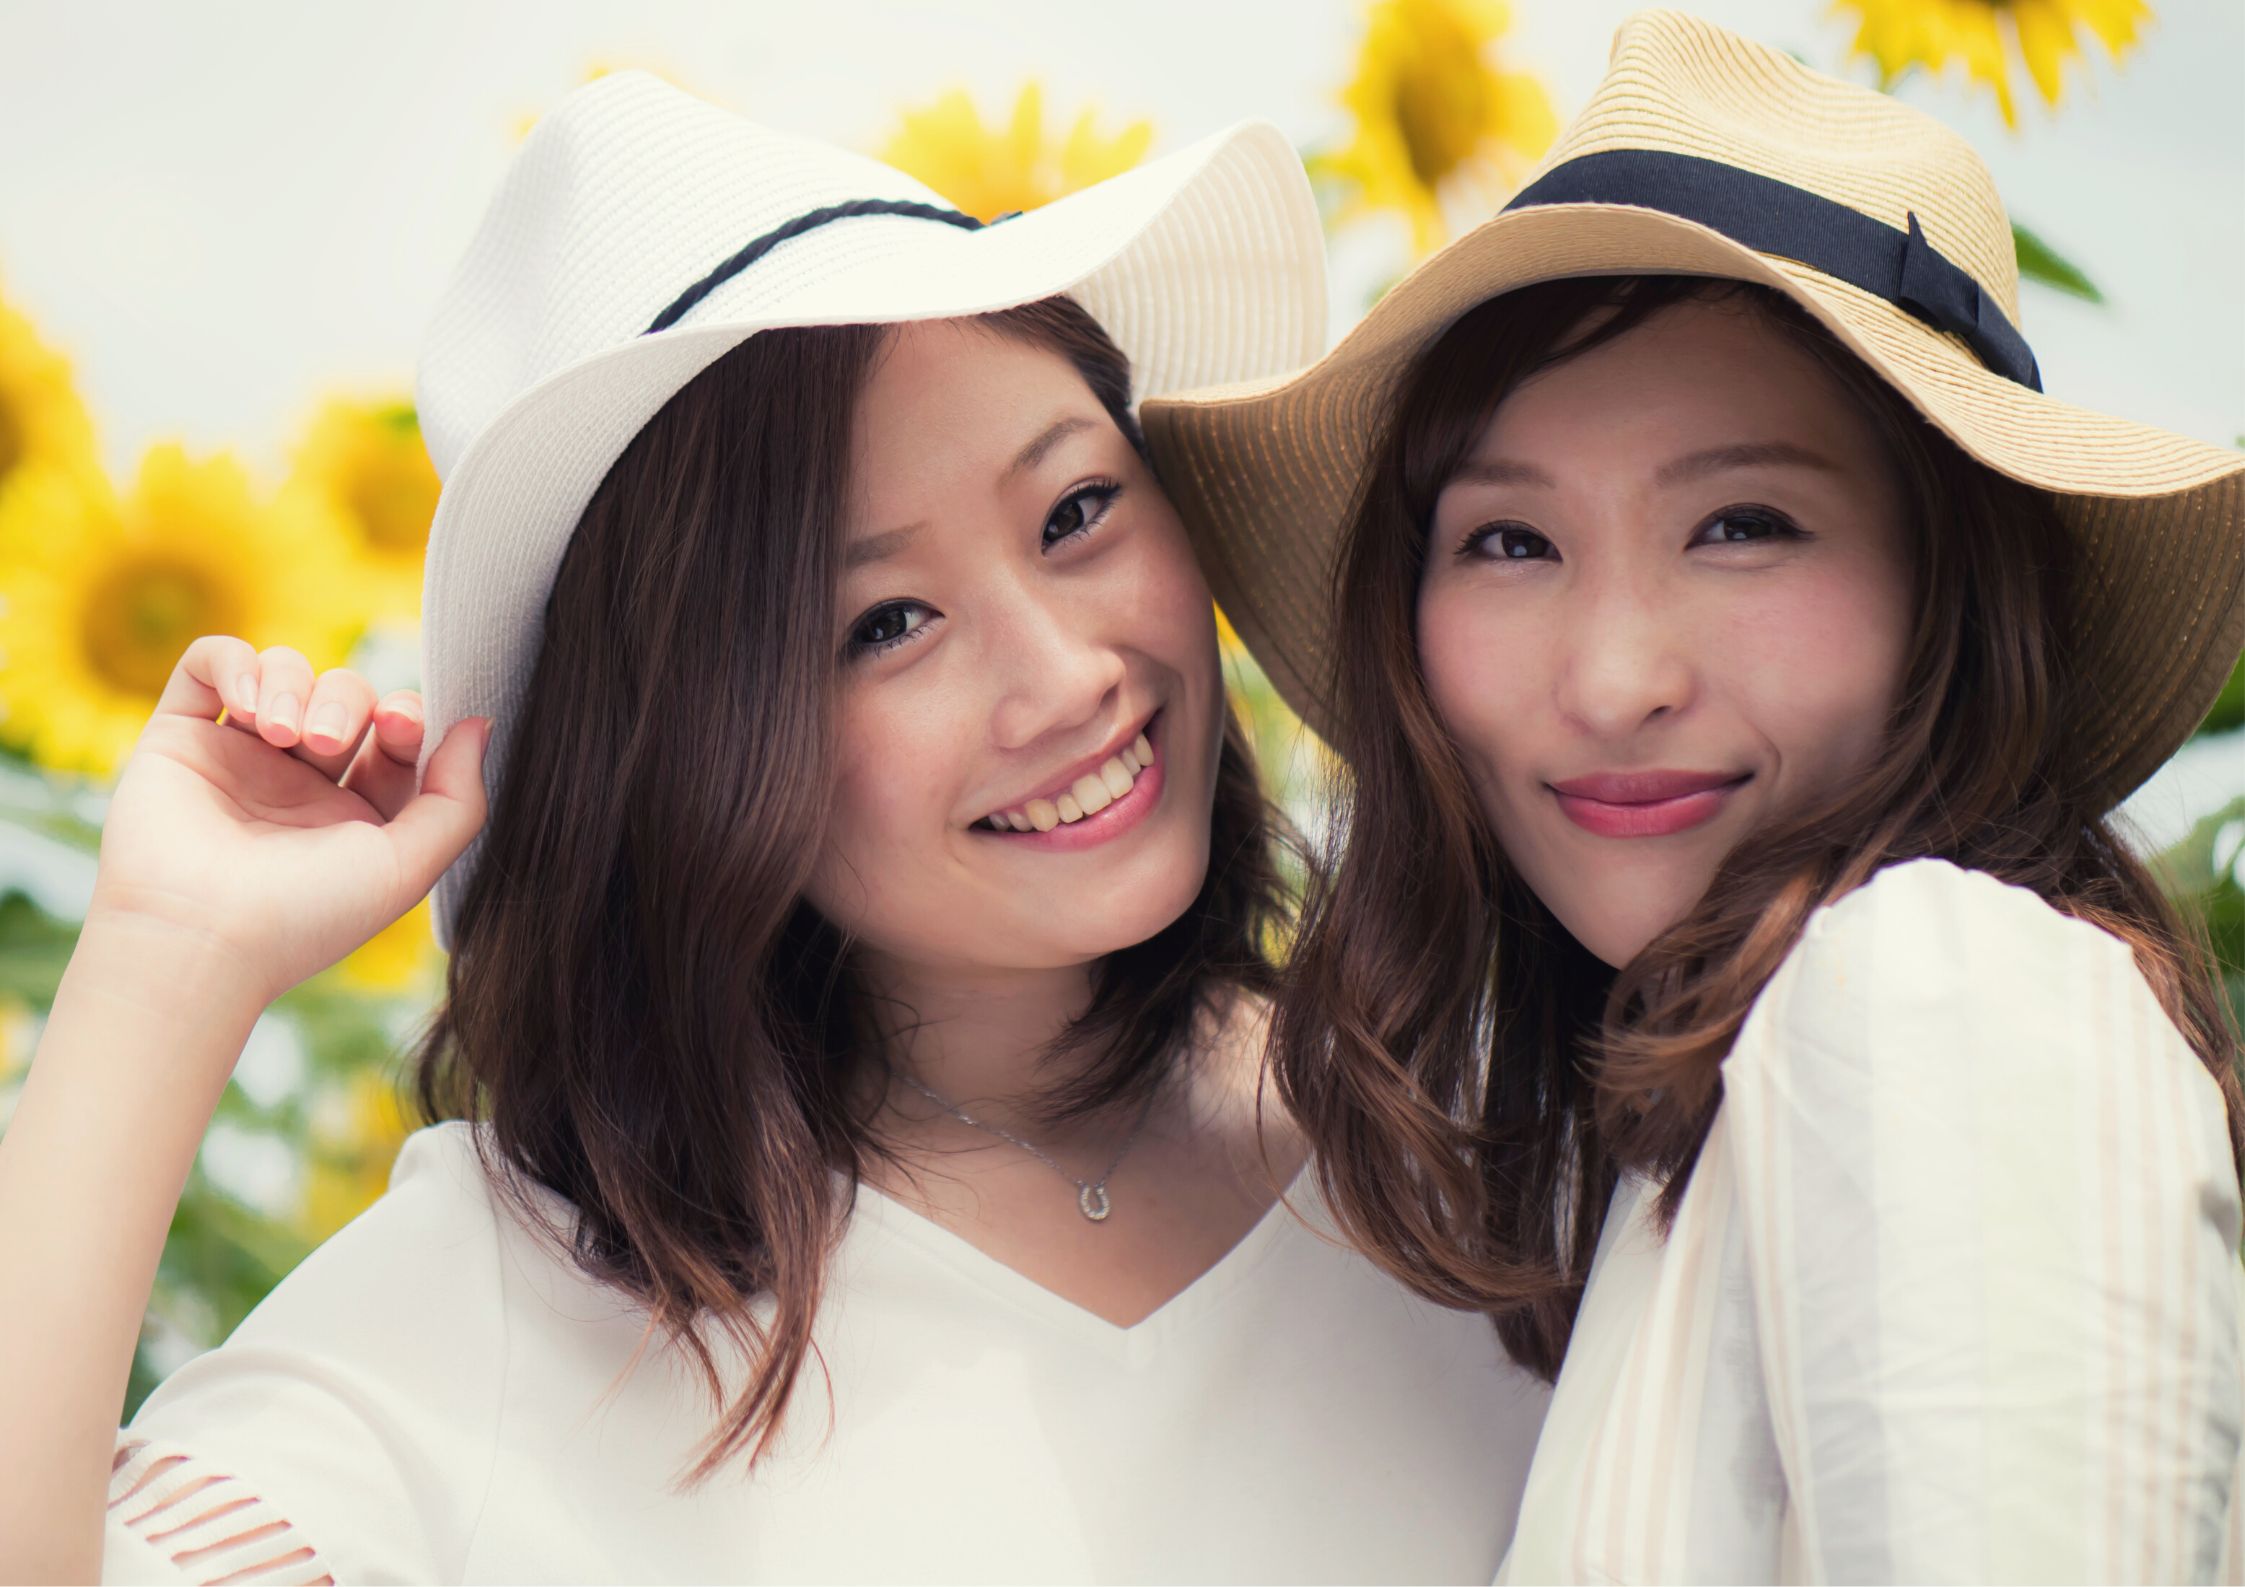 Segreto delle donne giapponesi per rimanere giovani